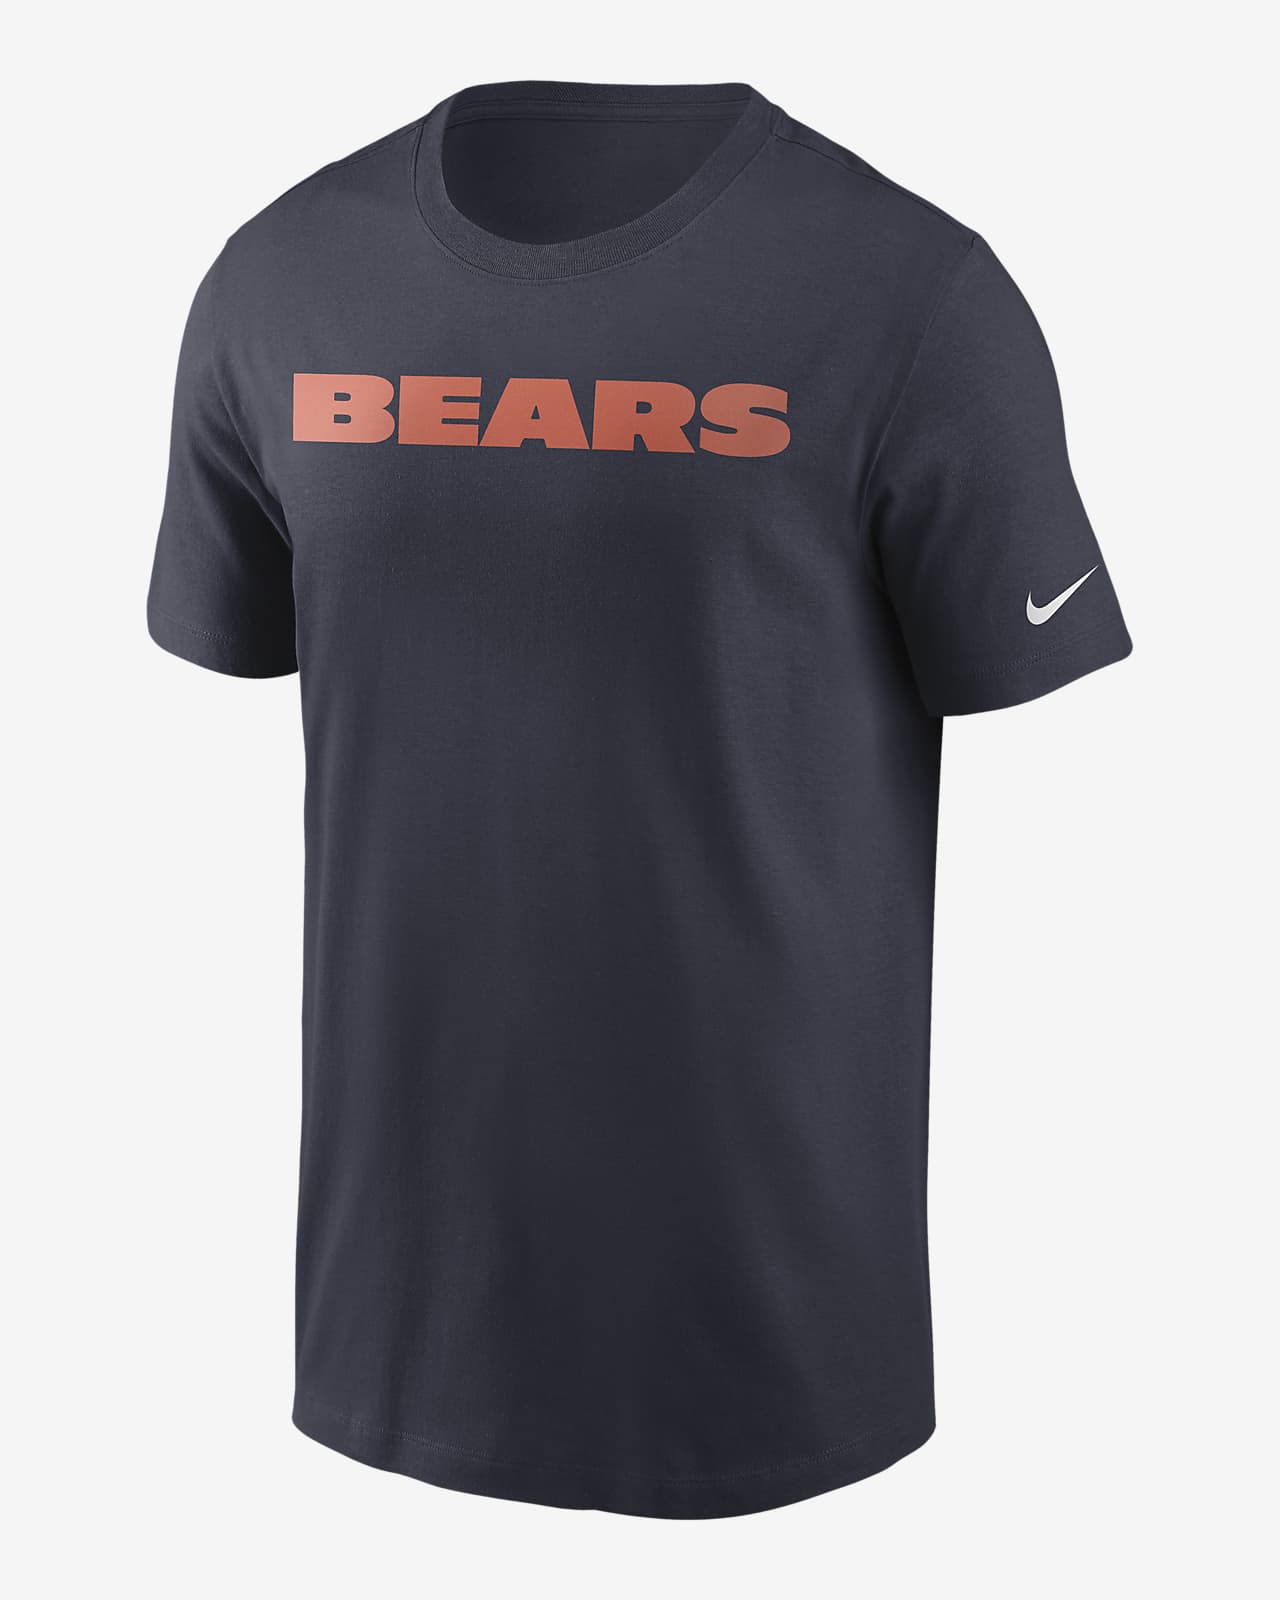 Nike (NFL Chicago Bears) Men's T-Shirt